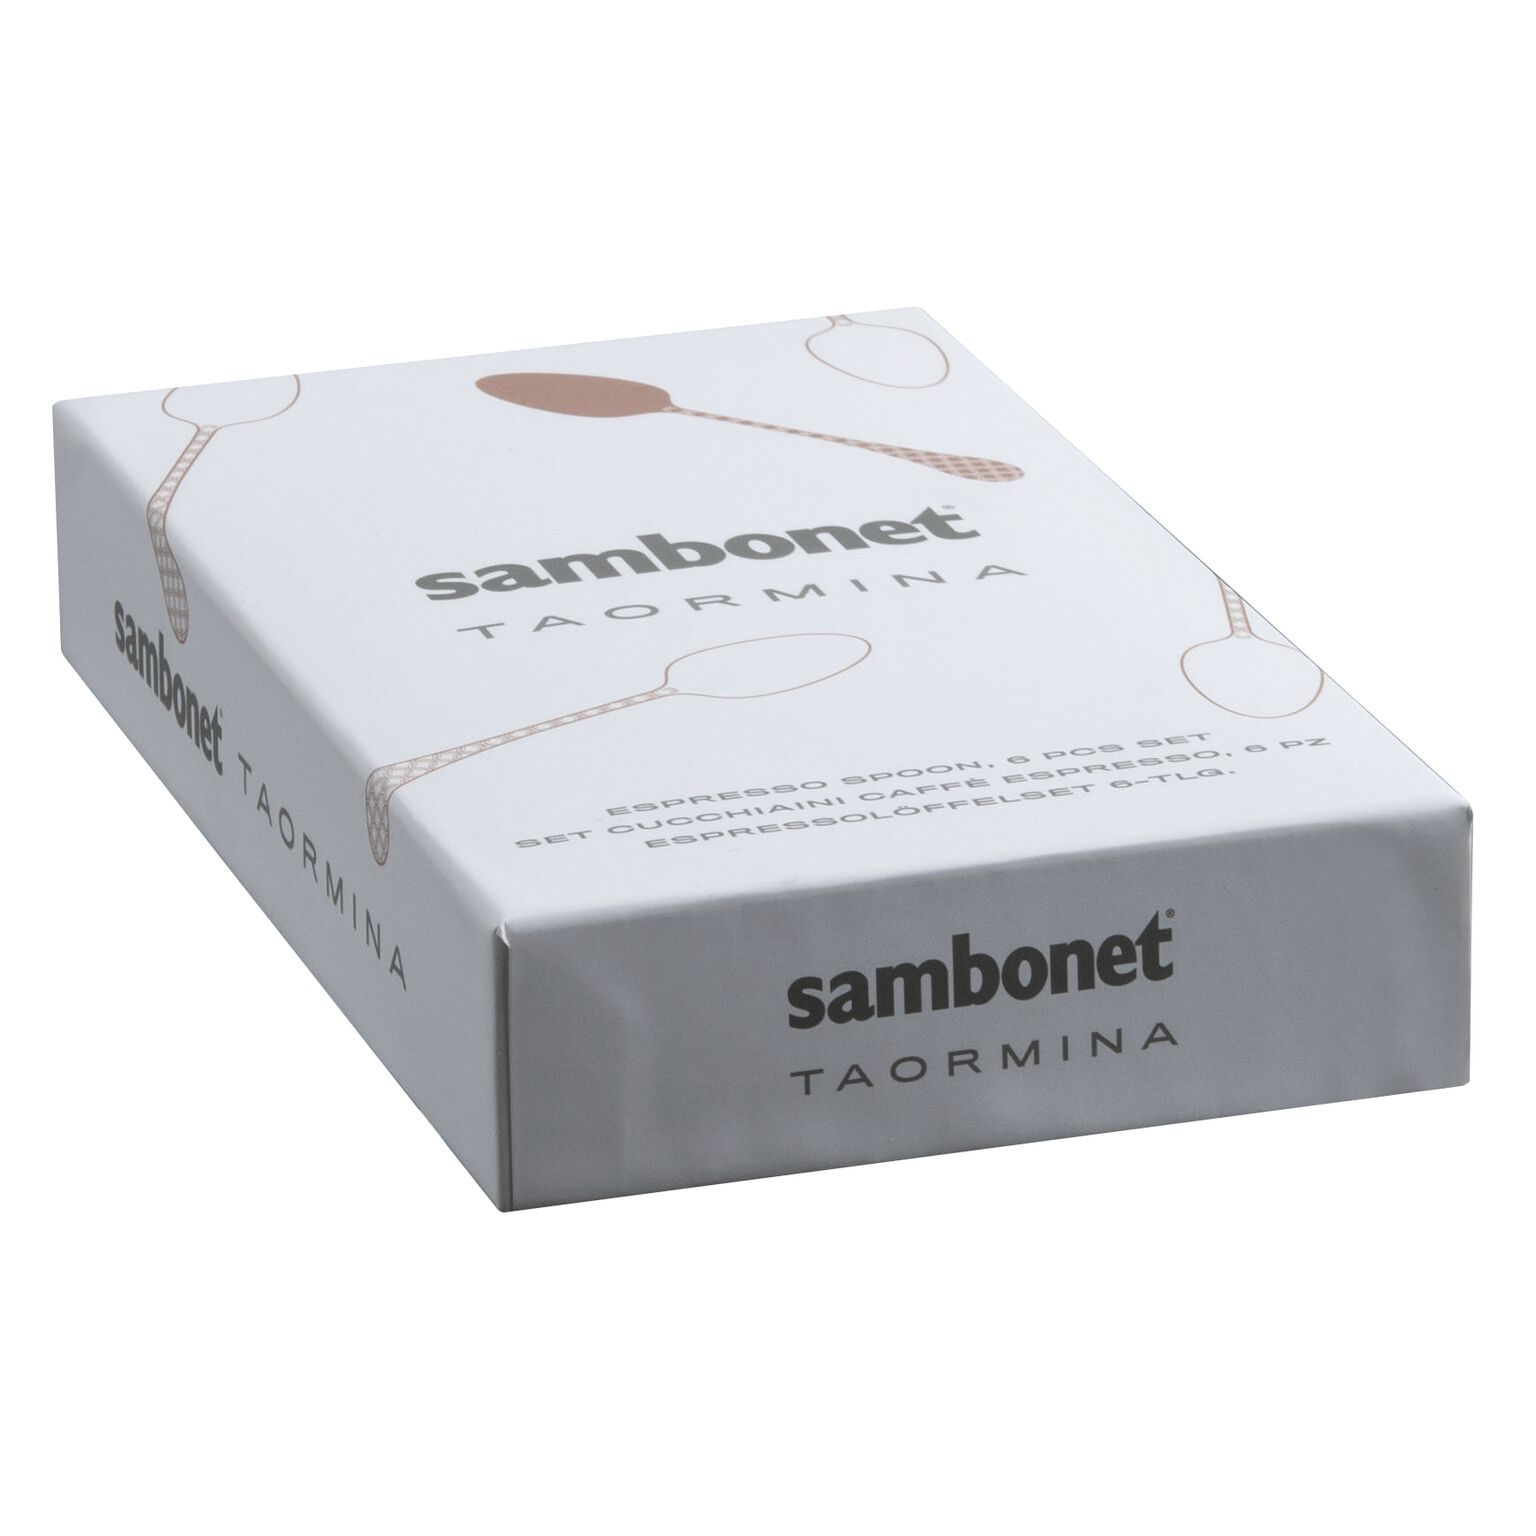 Sambonet Ложка кофейная набор 6 штук Taormina Black (52766KA7) Sambonet - spb.v-b.ru